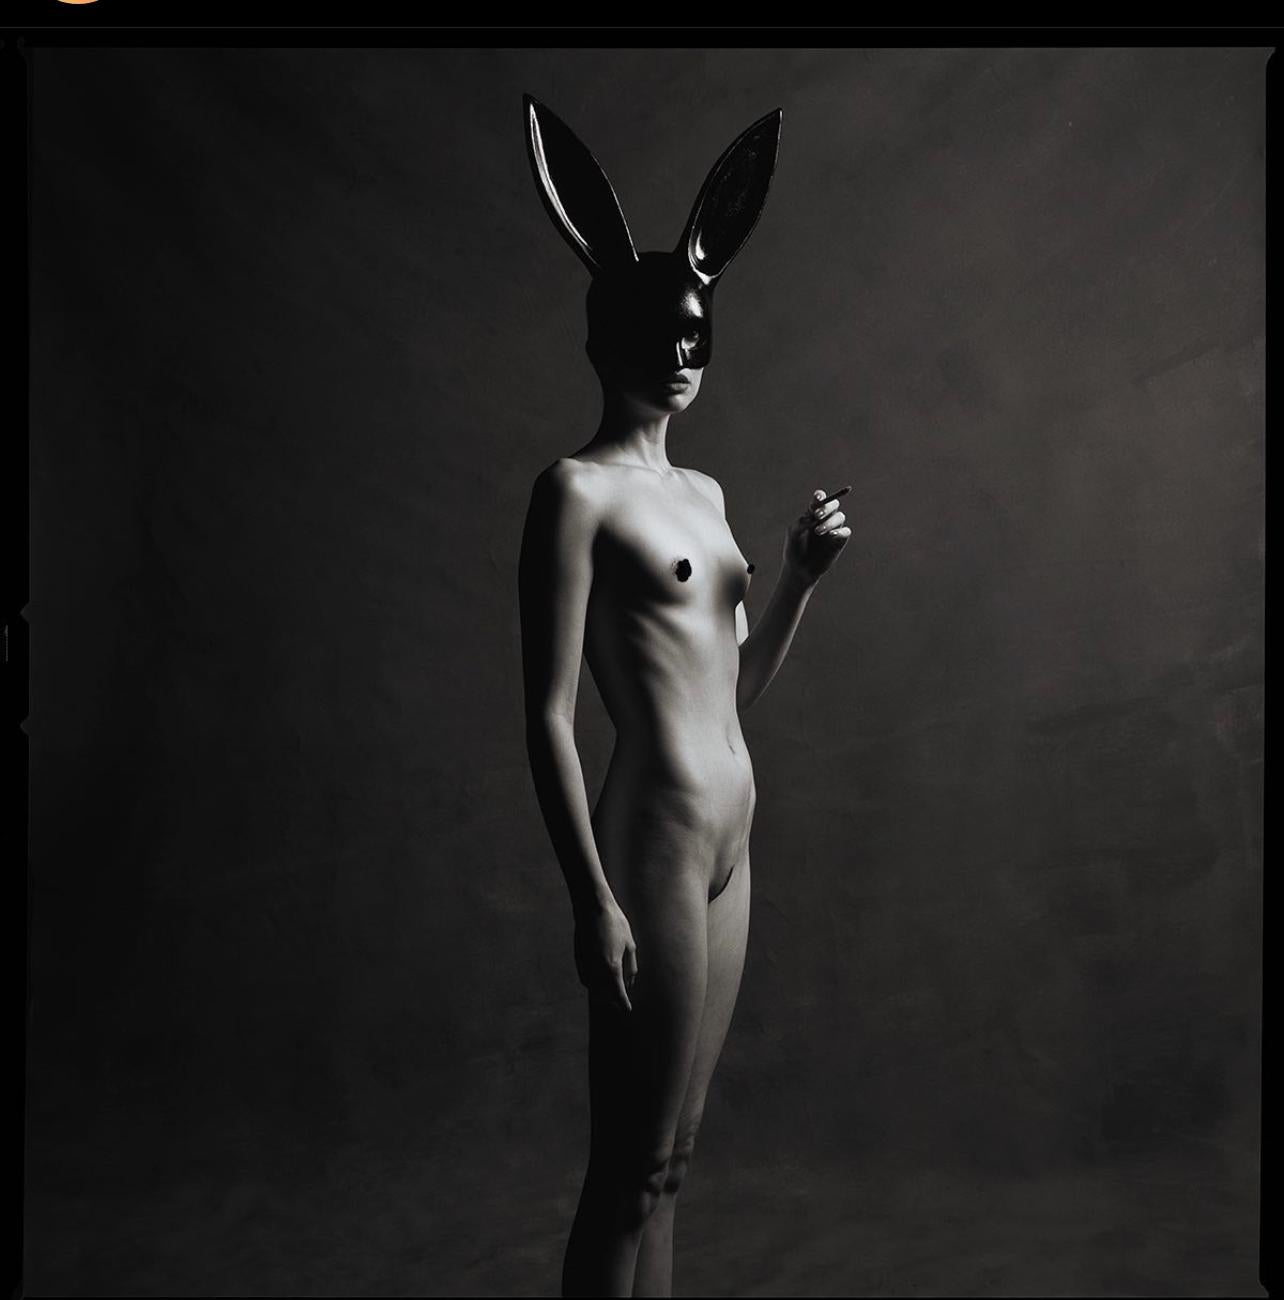 Monochrome Bunny (45" x45")